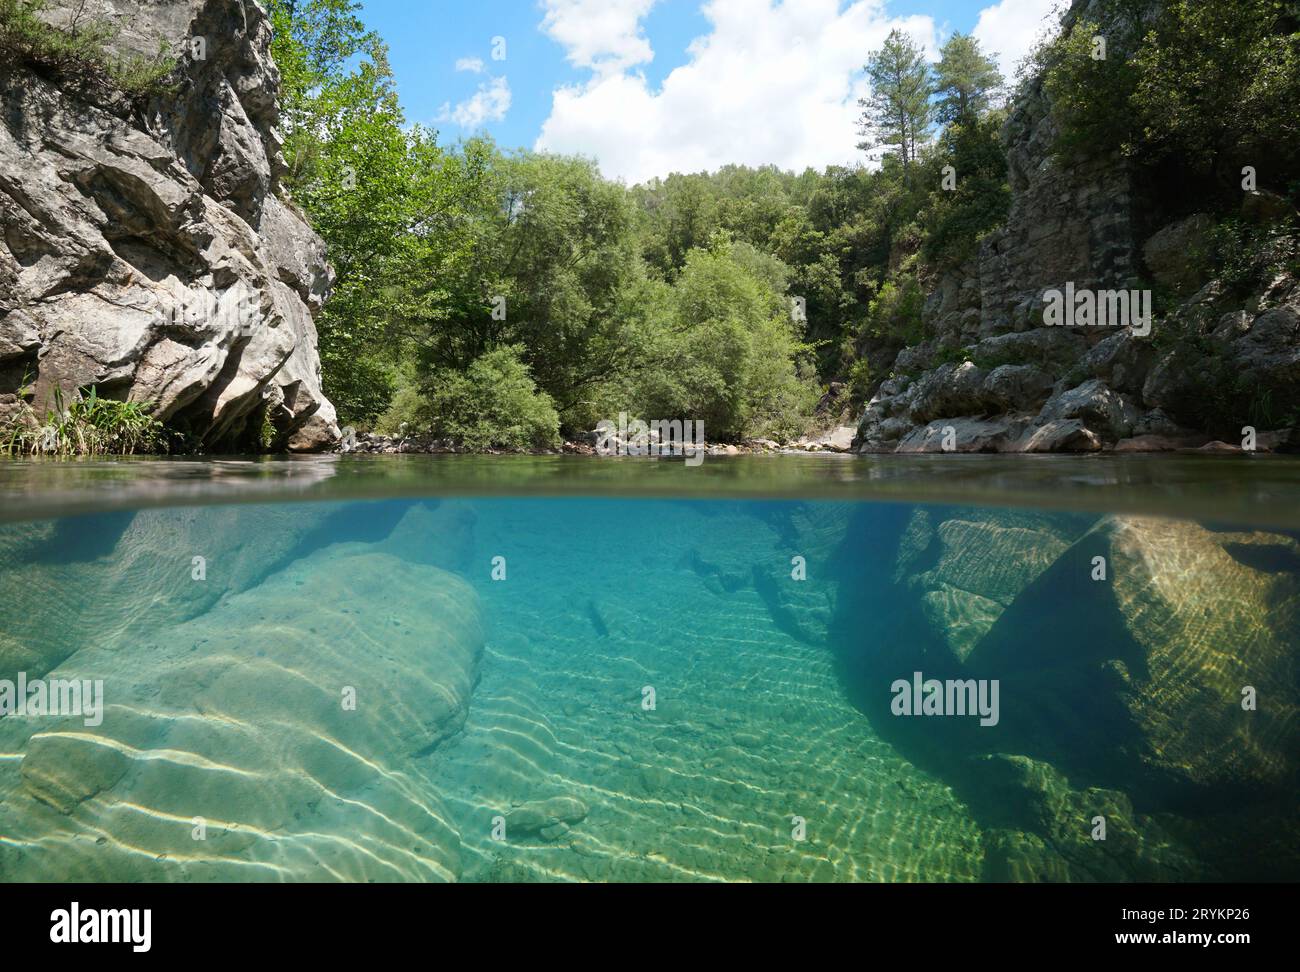 Rivière rocheuse à l'eau claire, vue sur deux niveaux au-dessus et sous la surface de l'eau, Espagne, Catalogne, Alt Emporda Banque D'Images